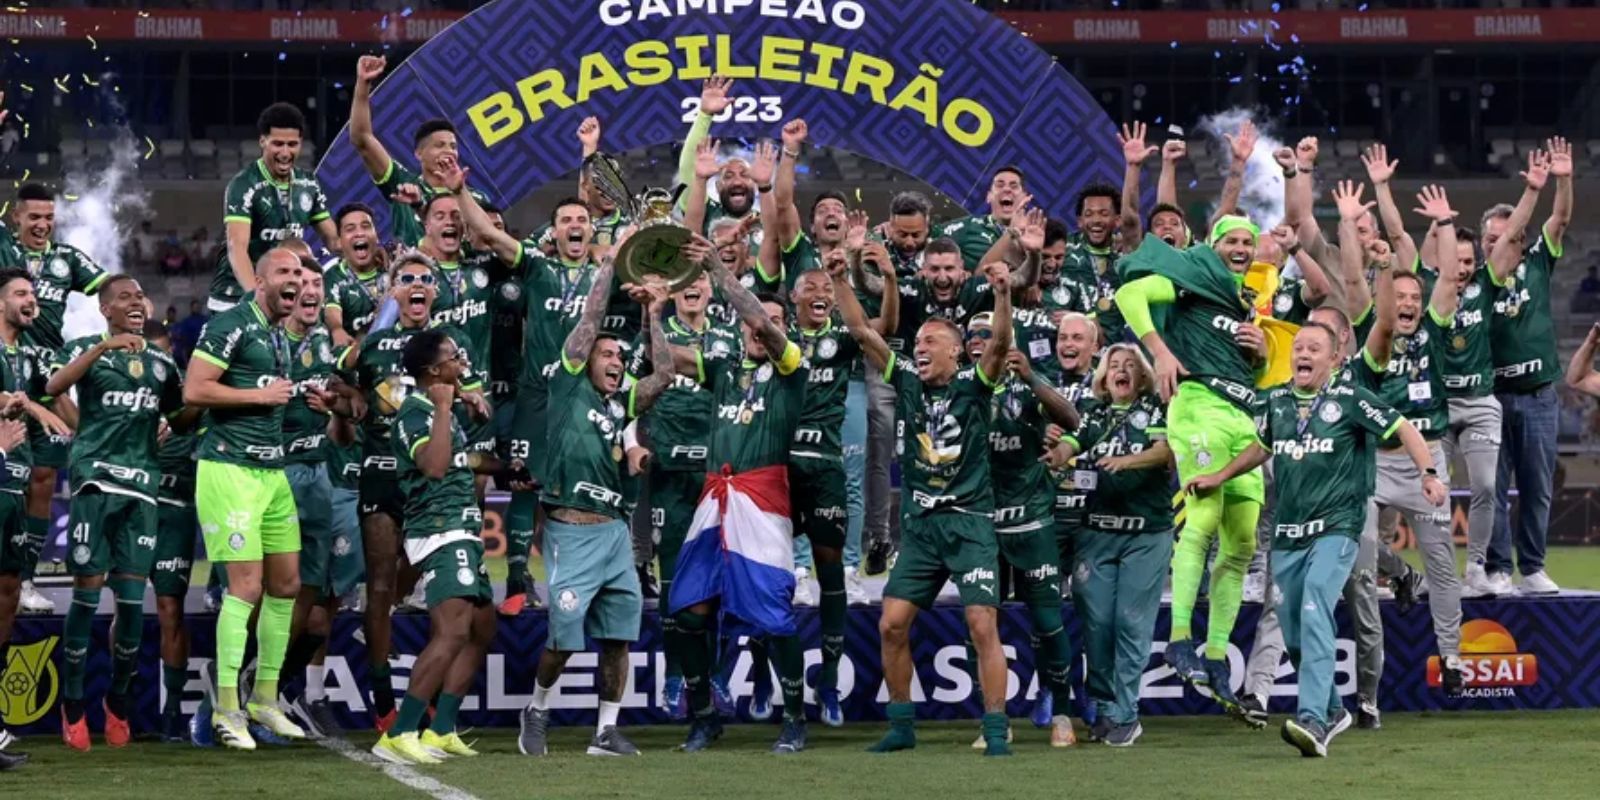 Brasileirão 2023: veja o que o seu time precisa fazer para ganhar